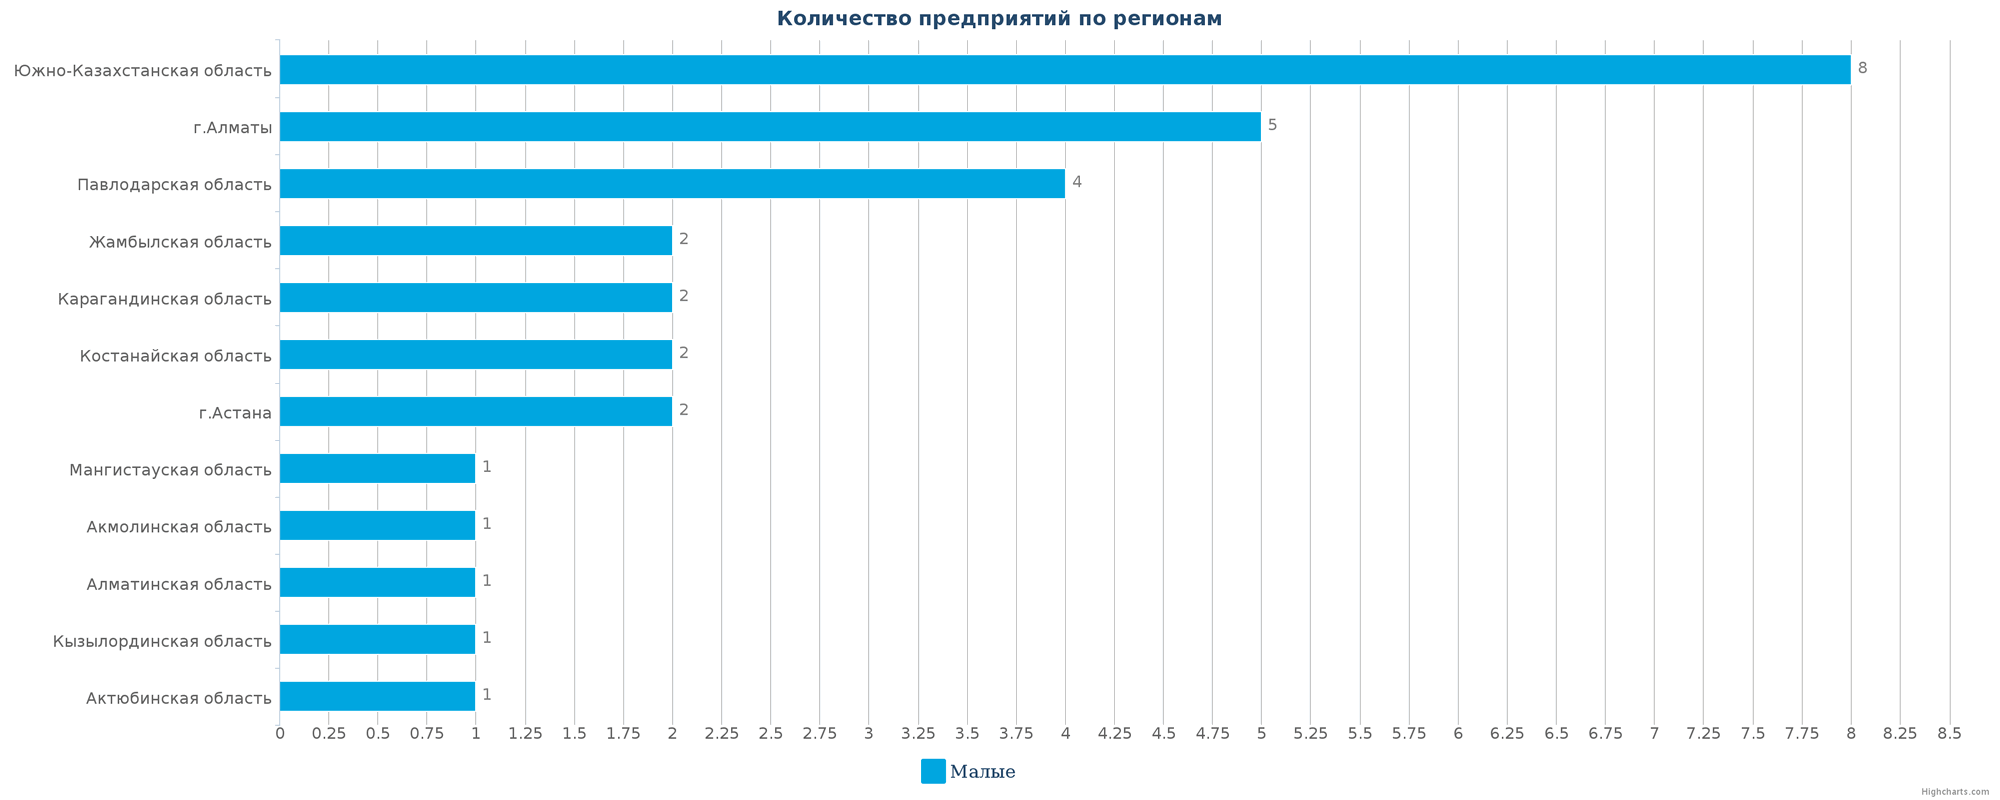 Количество новых производственных предприятий по регионам Казахстана